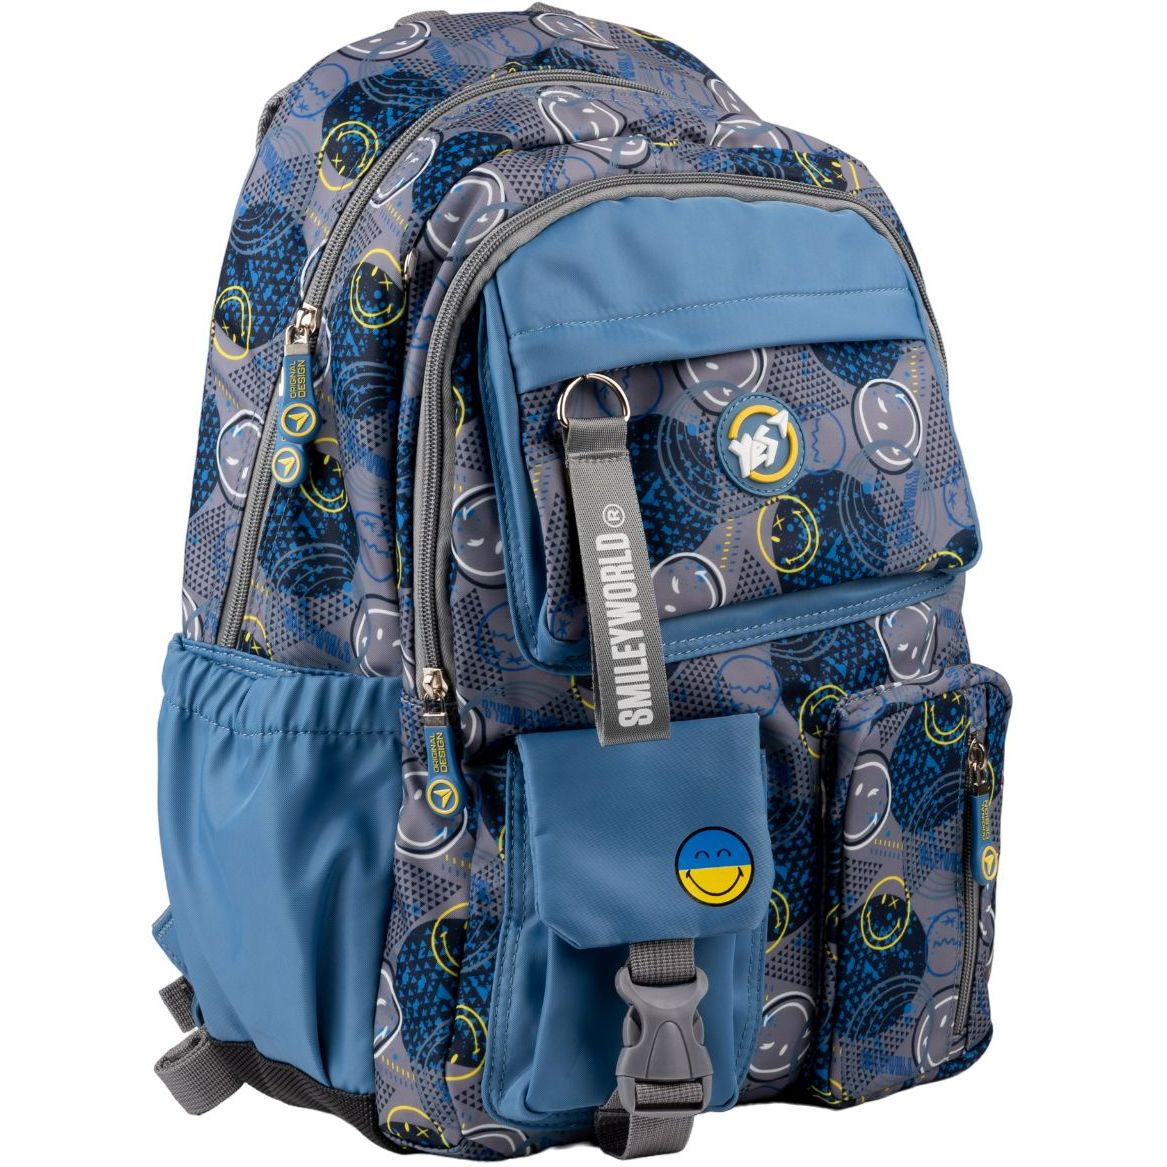 Рюкзак Yes TS-43 Smiley World, серый с голубым (559540) - фото 2